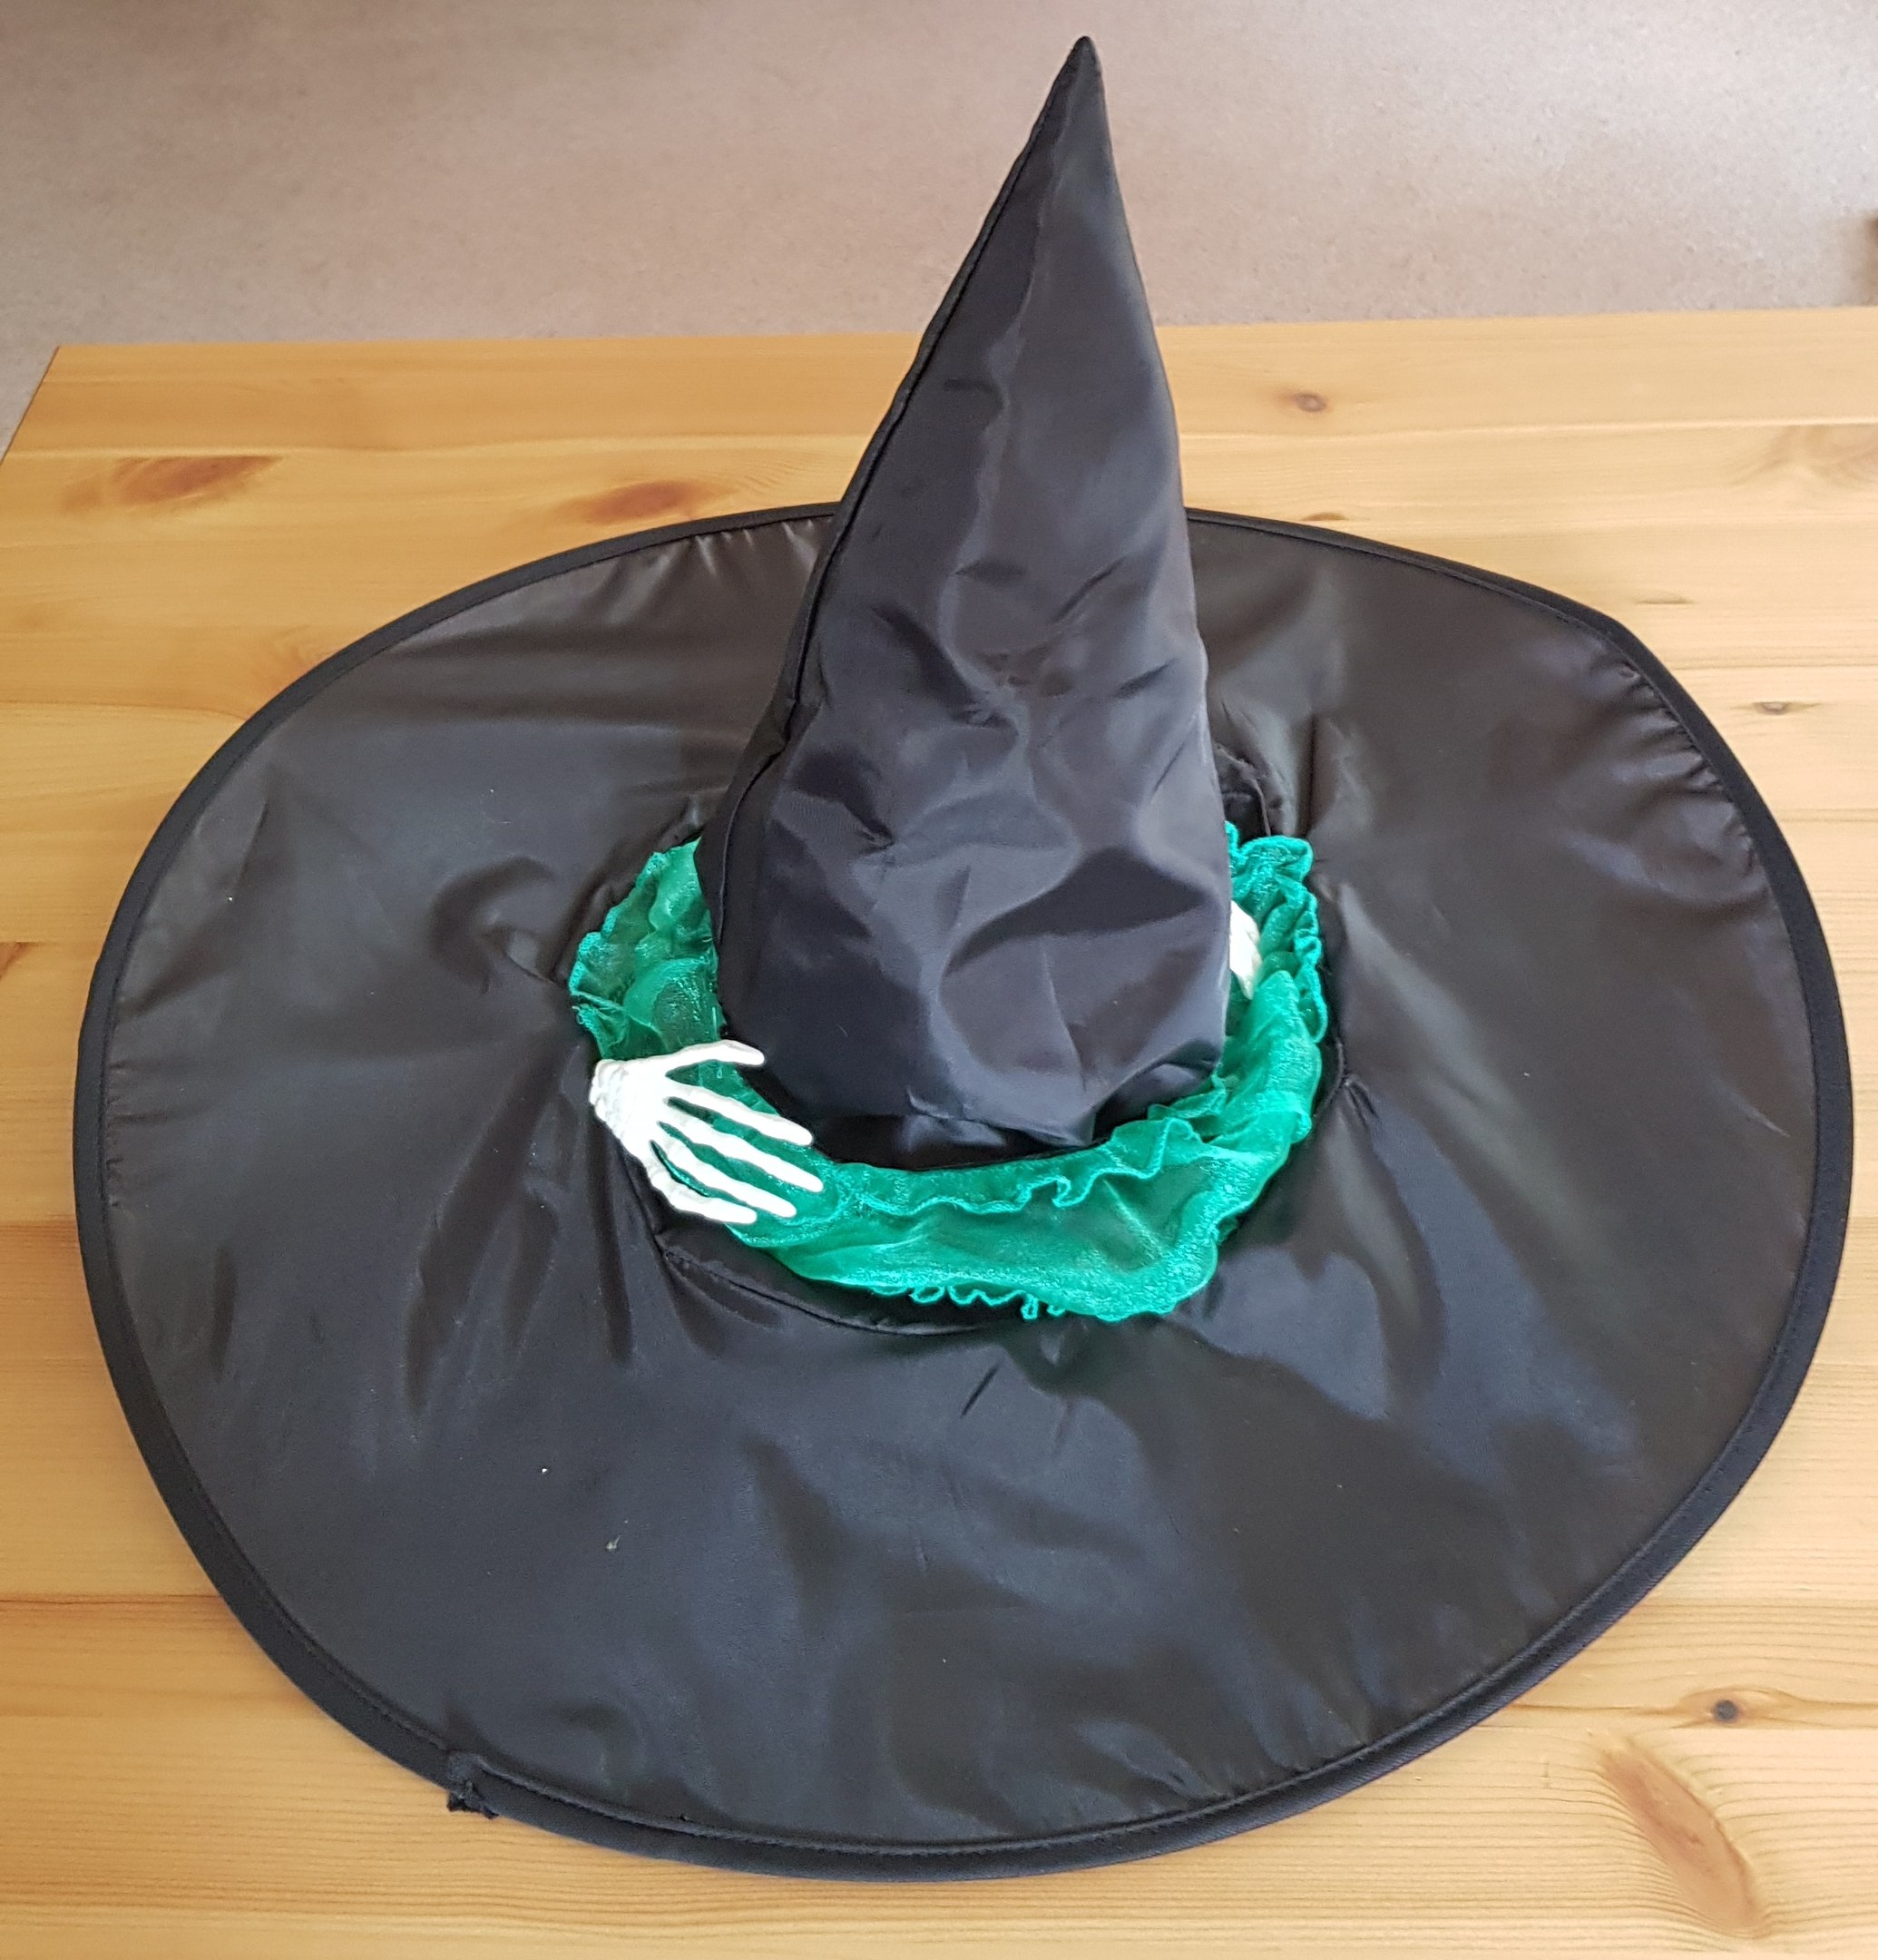 Шляпа ведьмы своими руками на хэллоуин с фото и видео